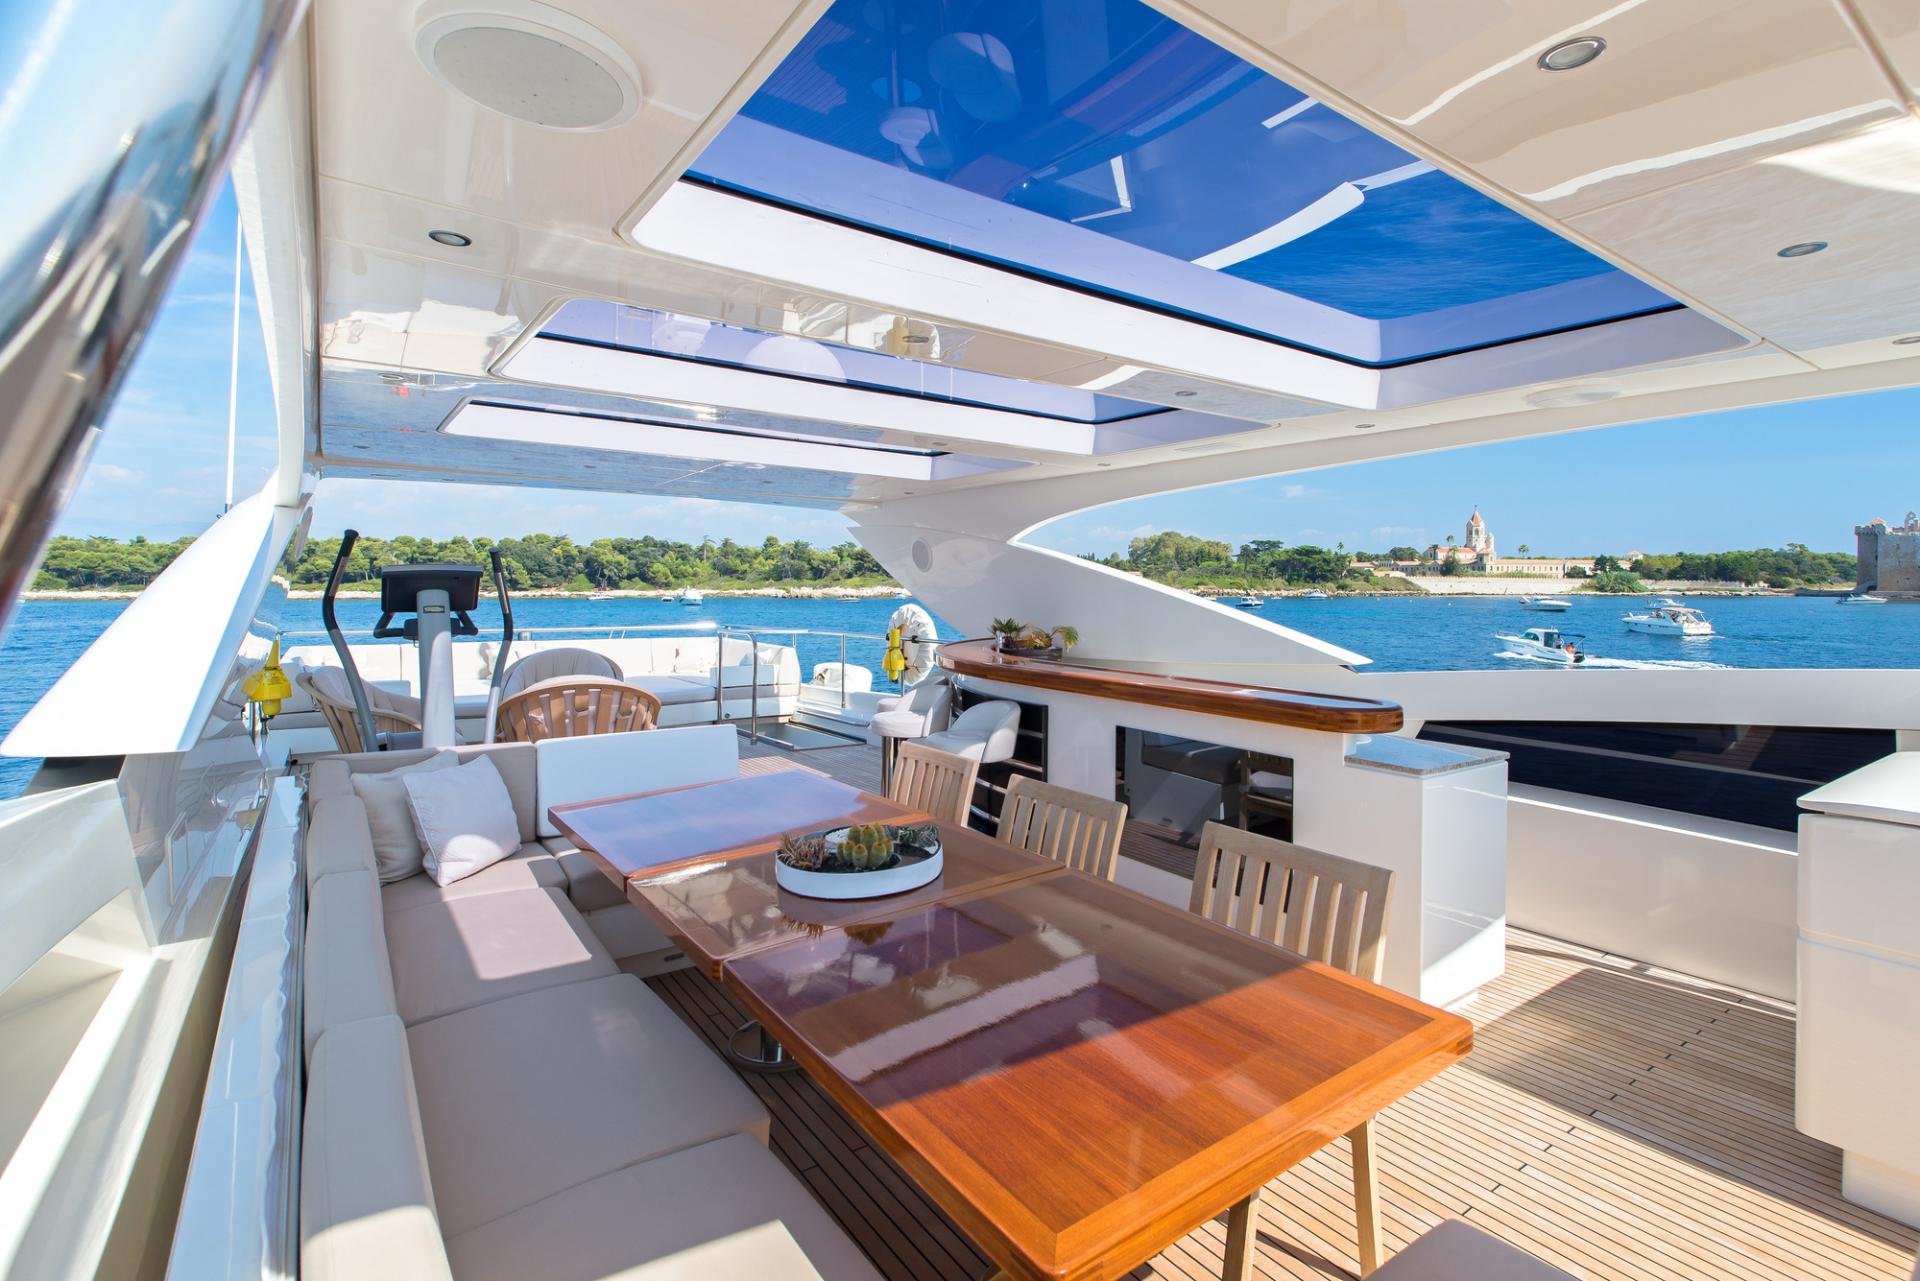 Arion-super-yacht-charter-sun-deck